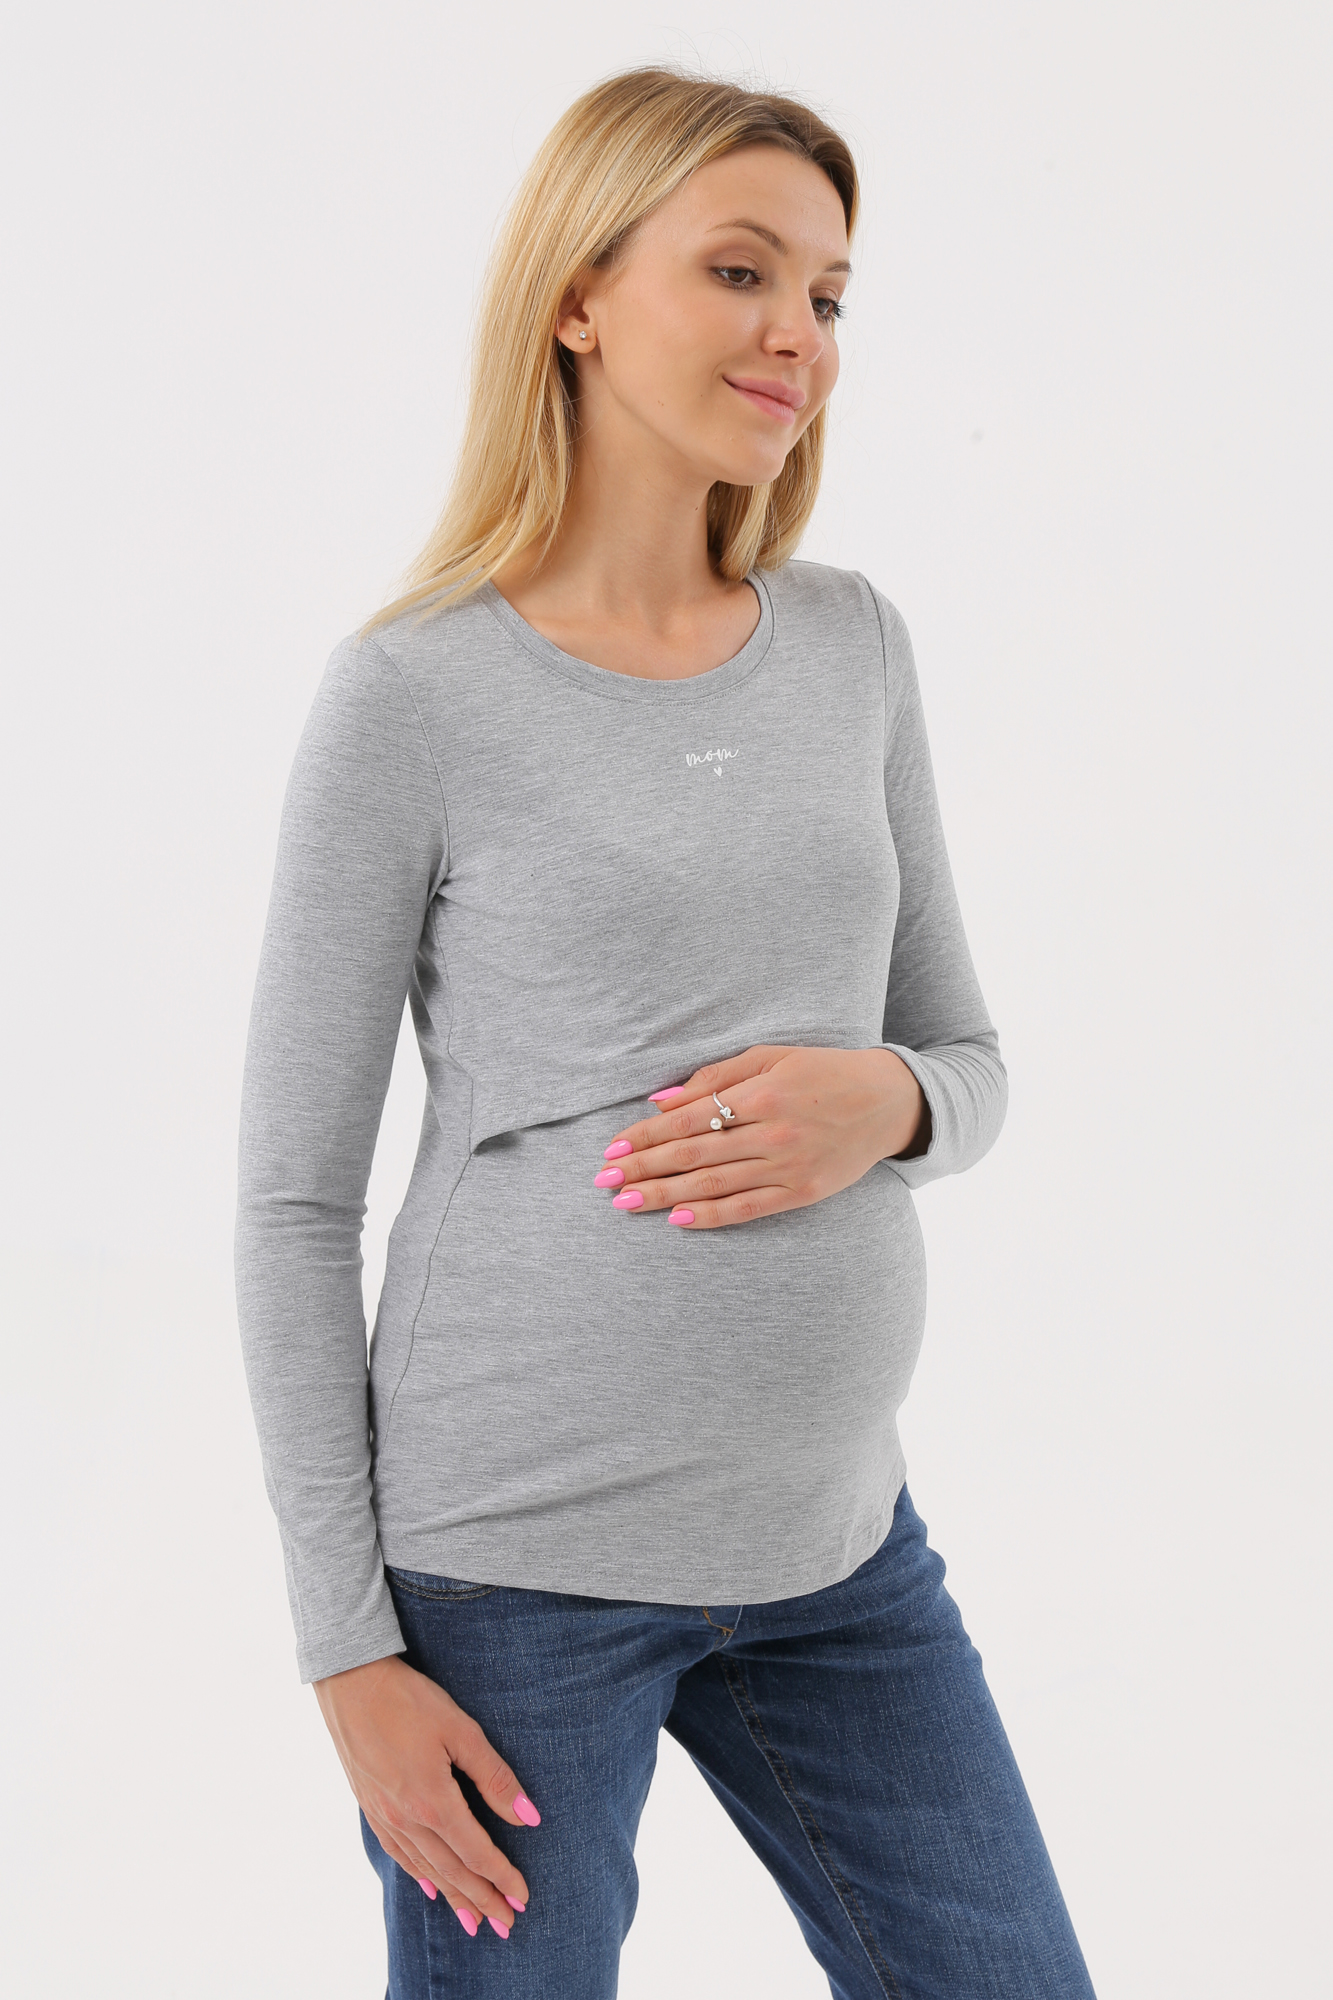 Лонгслив для беременных женский Magica bellezza МВ7038 серый 46 RU